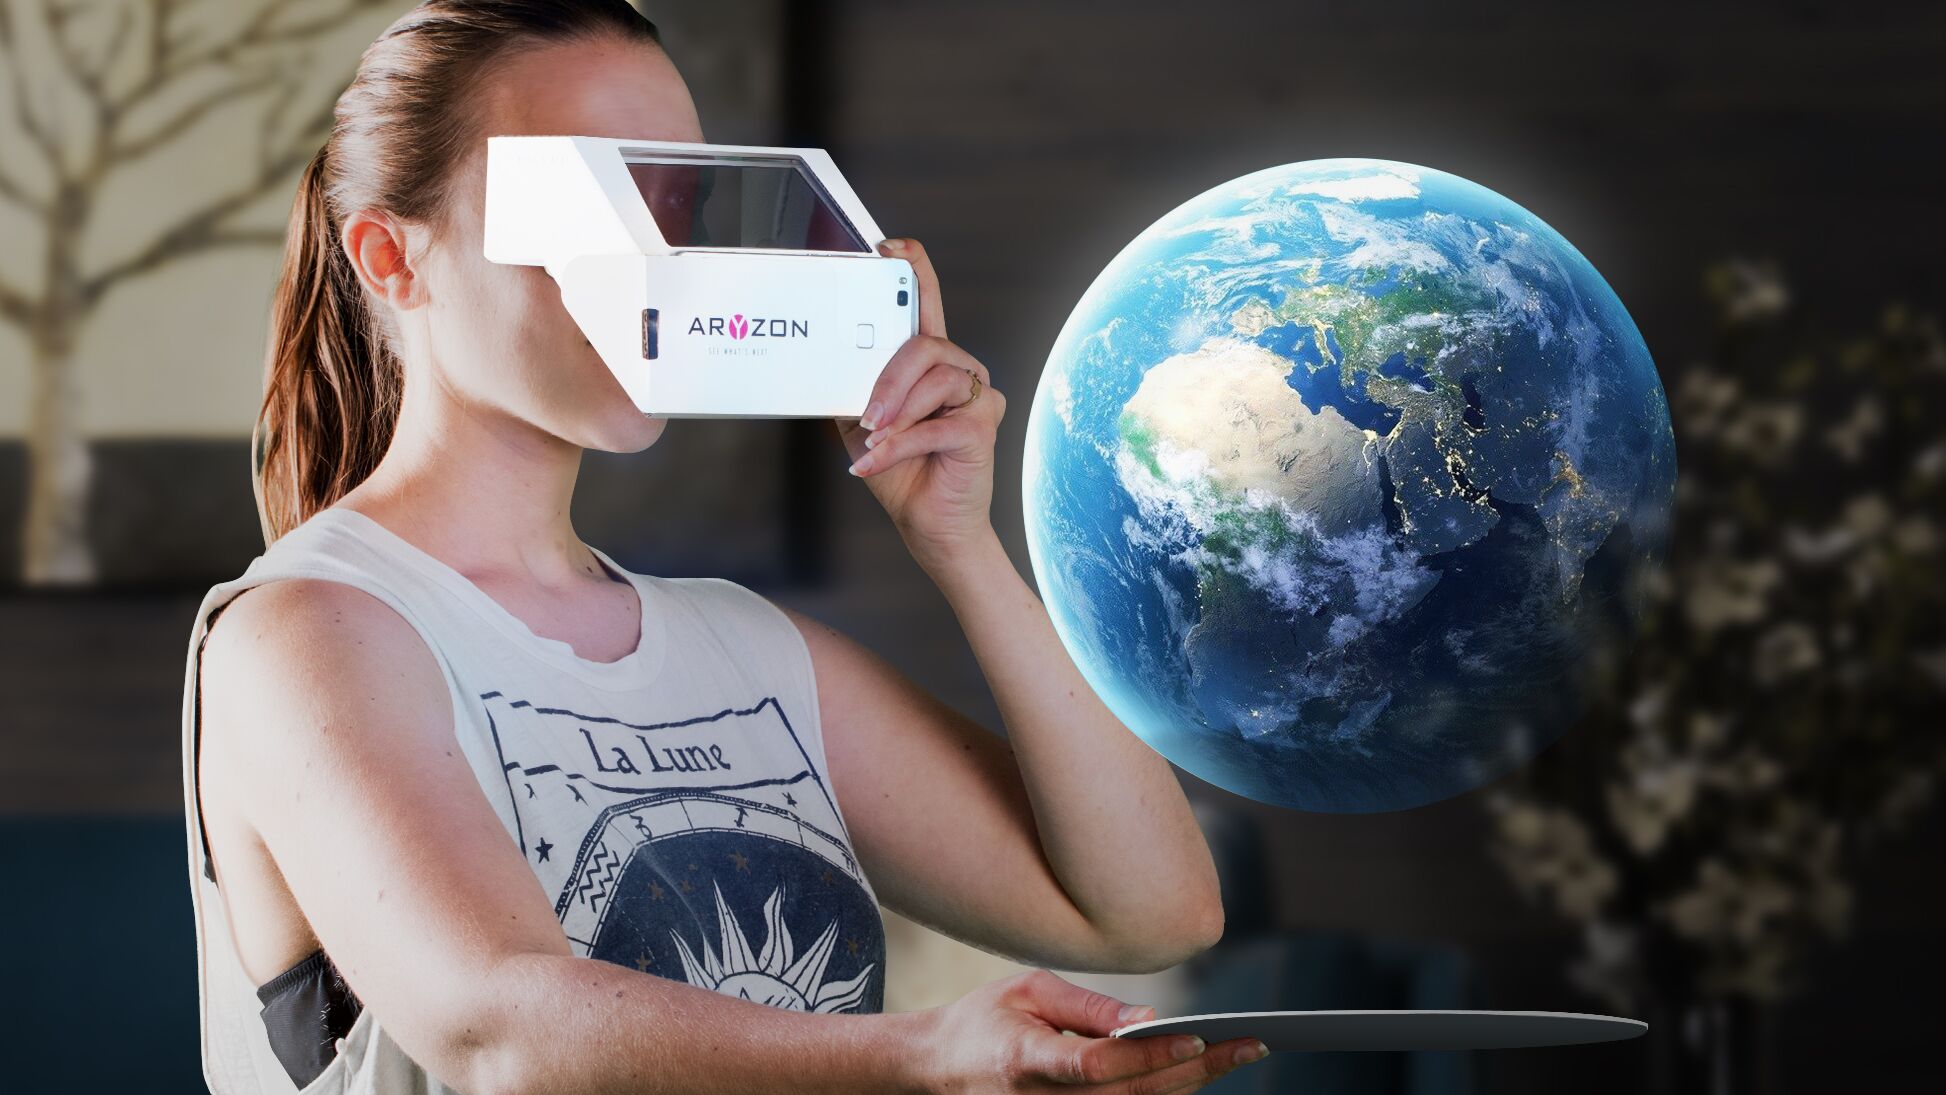 Aryzon augmented reality AR cardboard